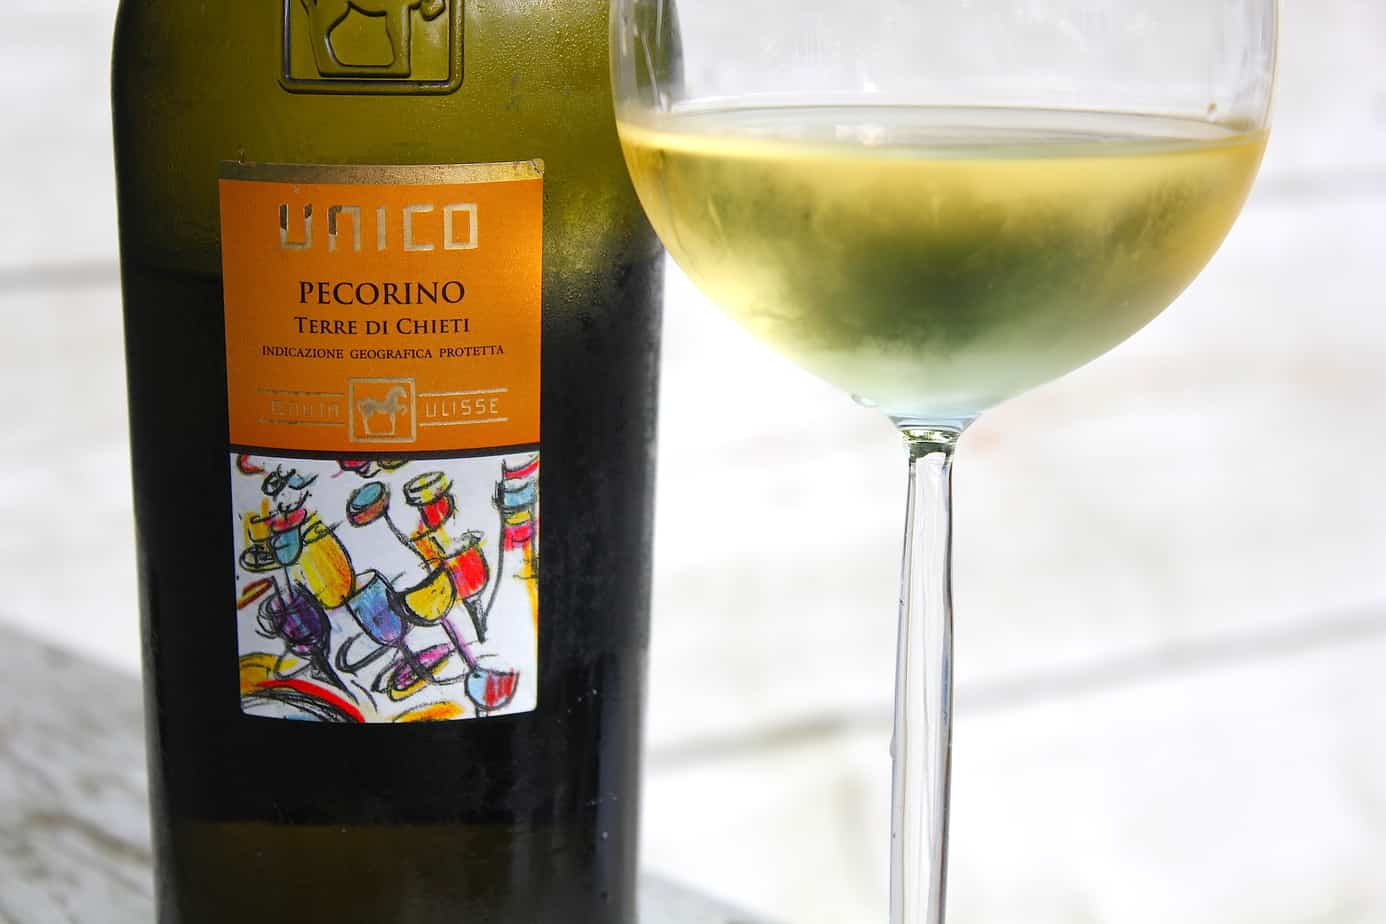 Haal Italië in huis met deze fijne wijnen uit Abruzzo